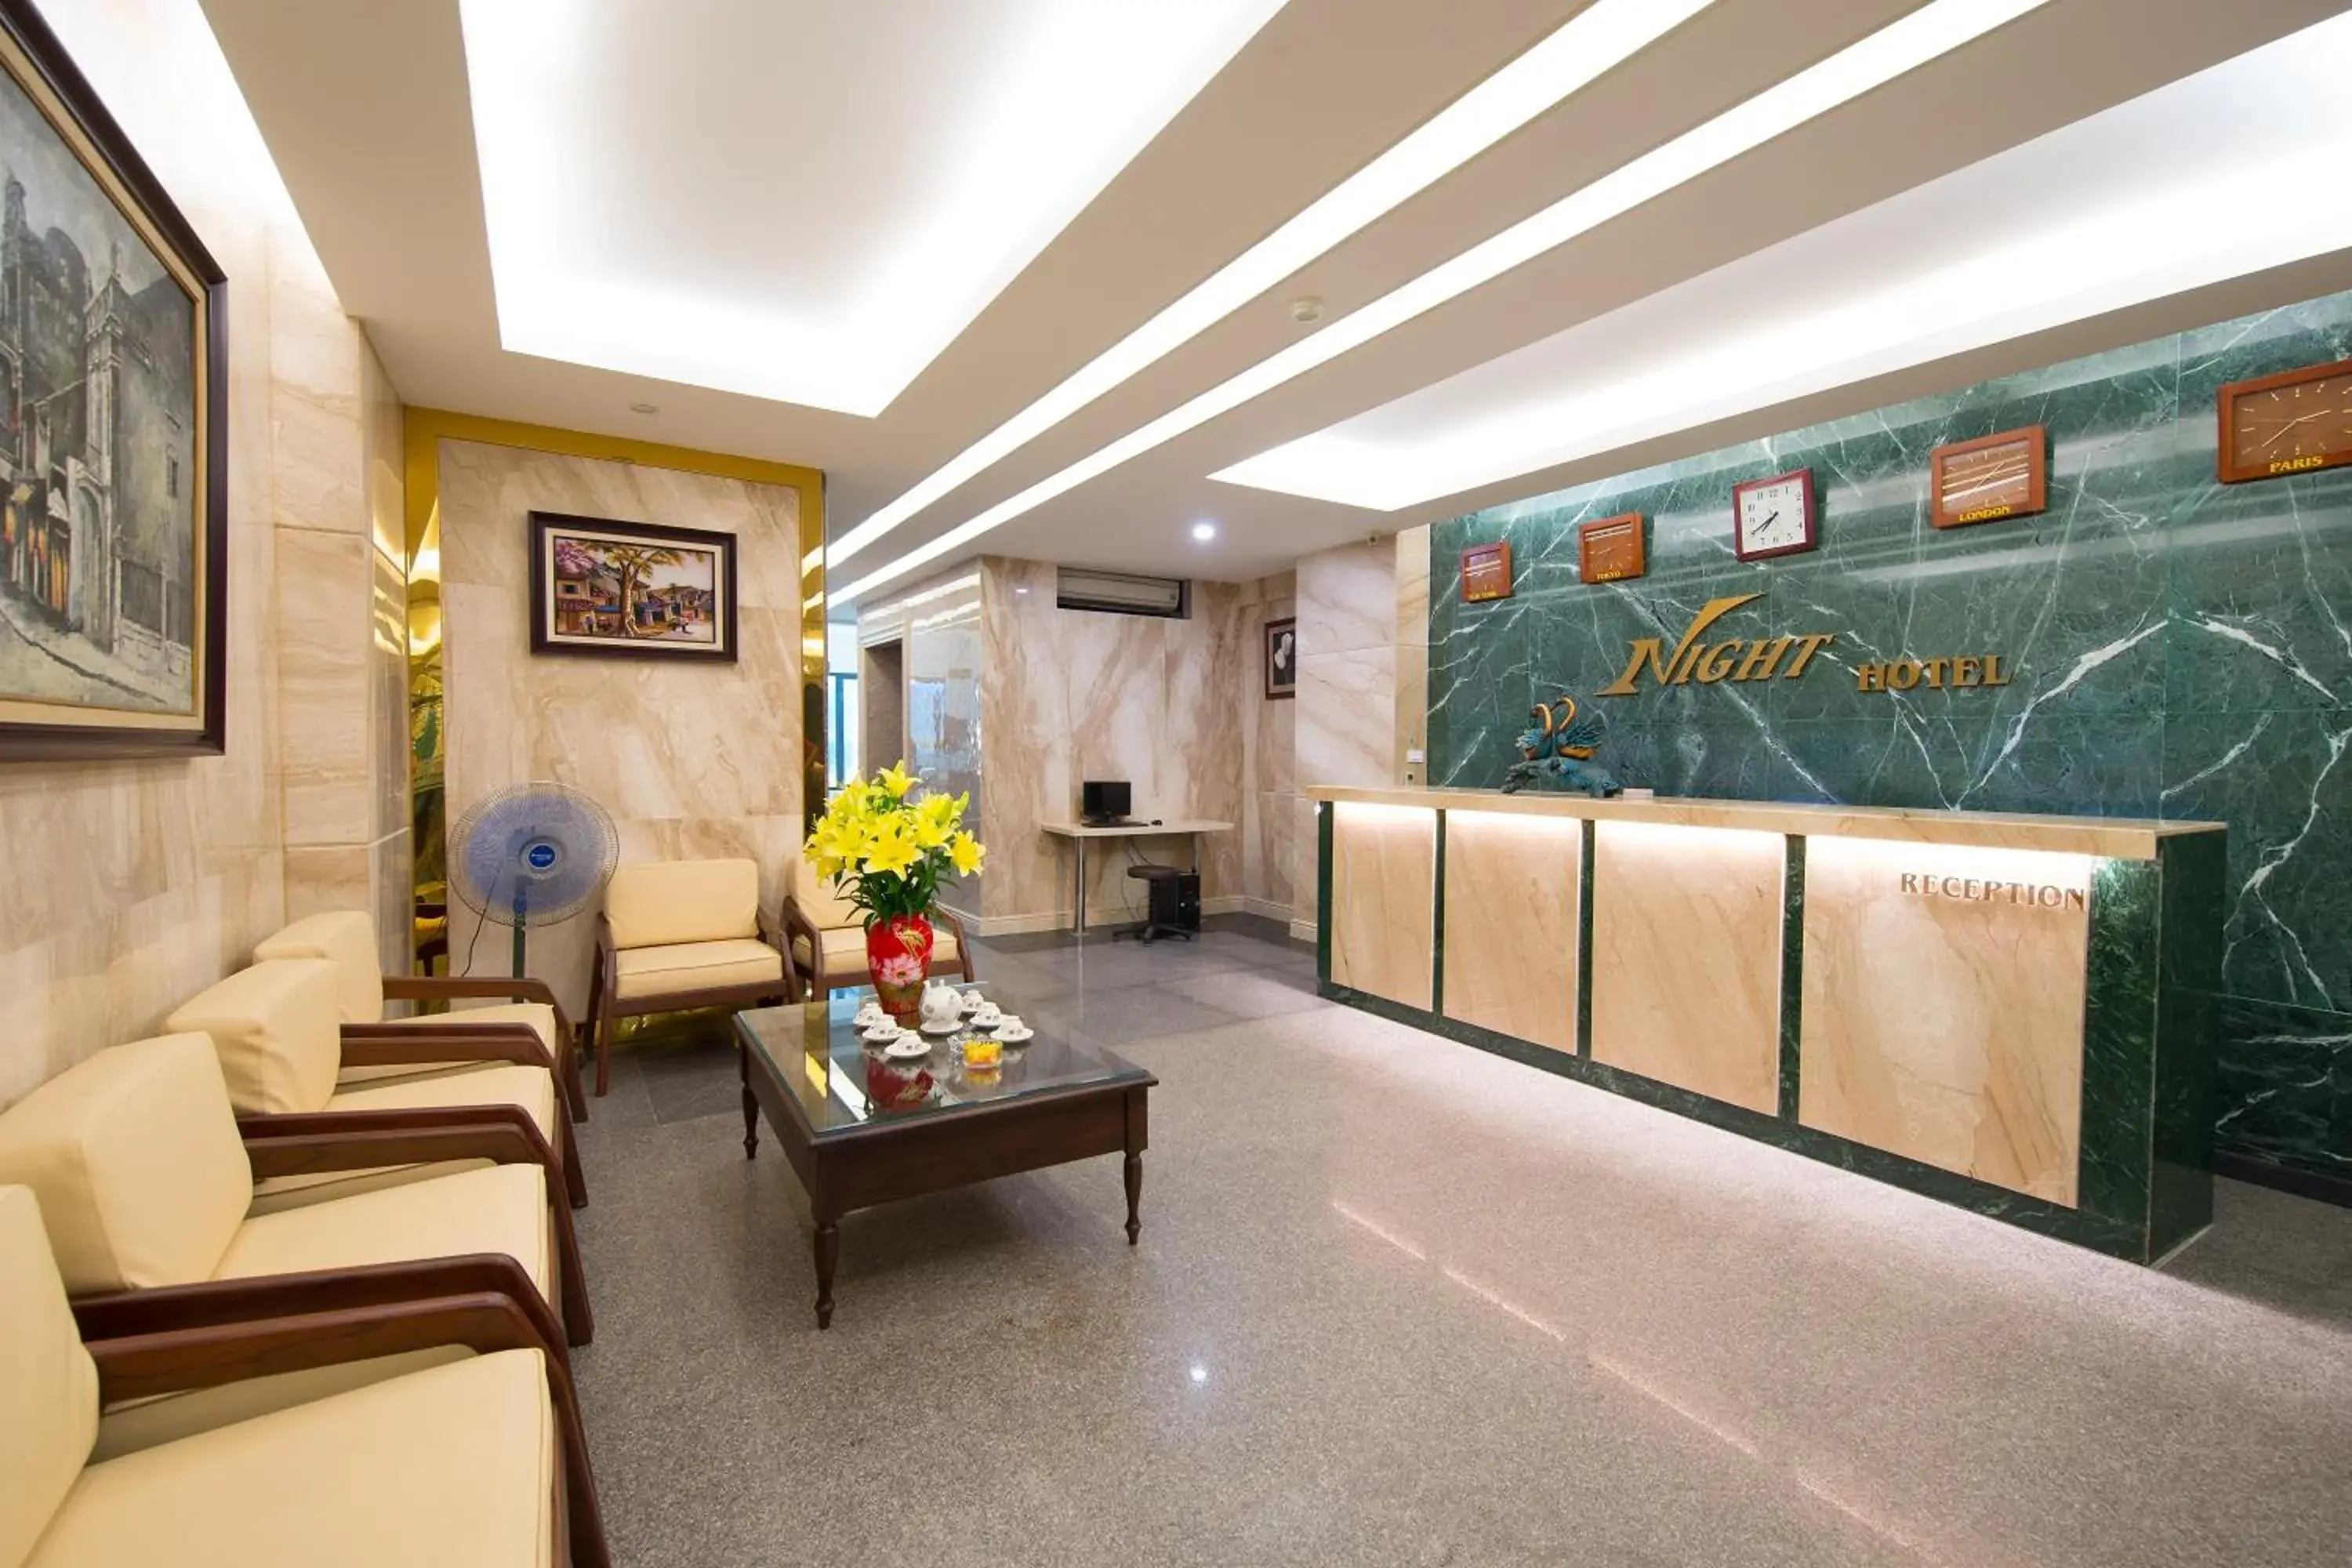 Lobby or reception, Lobby/Reception in Night Hotel